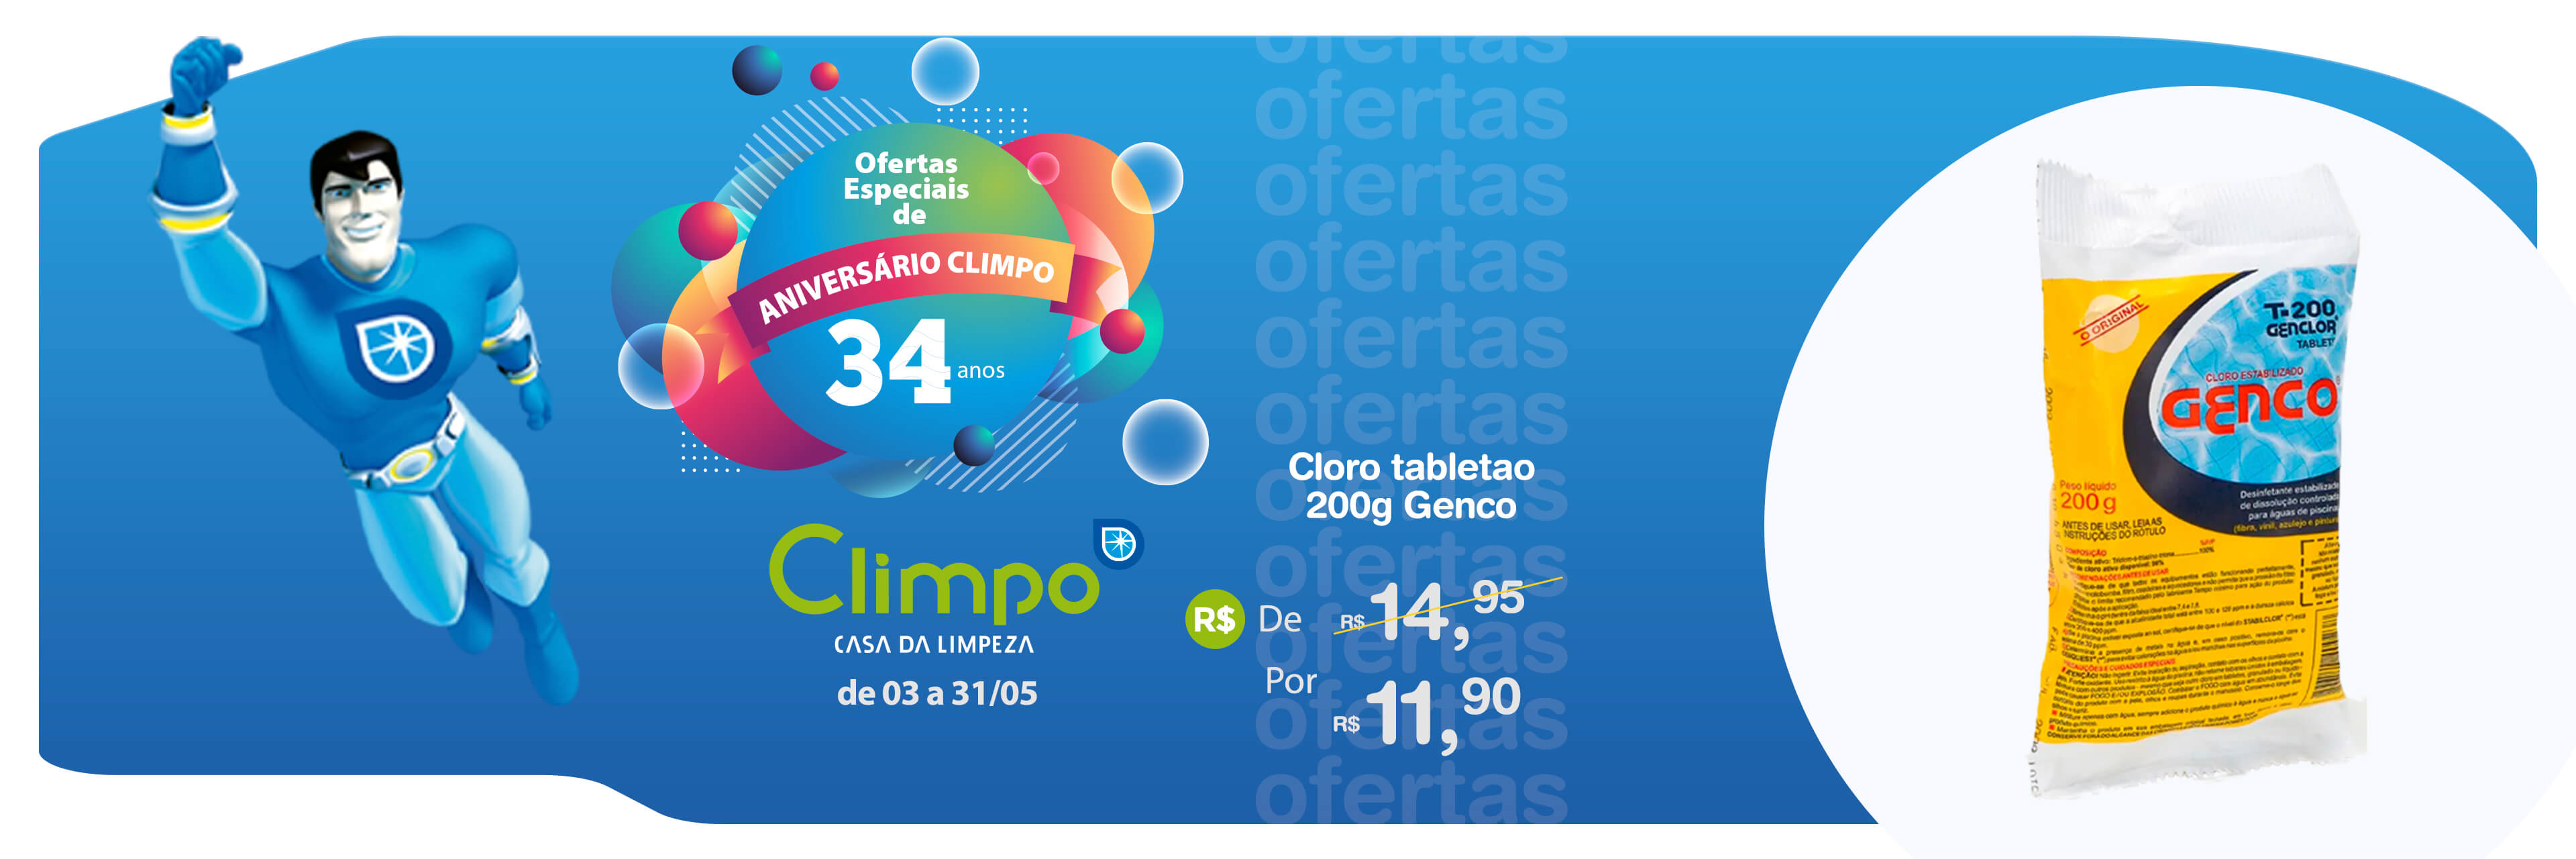 Banner Ofertas de Aniversário Climpo Cloro tabletao 07